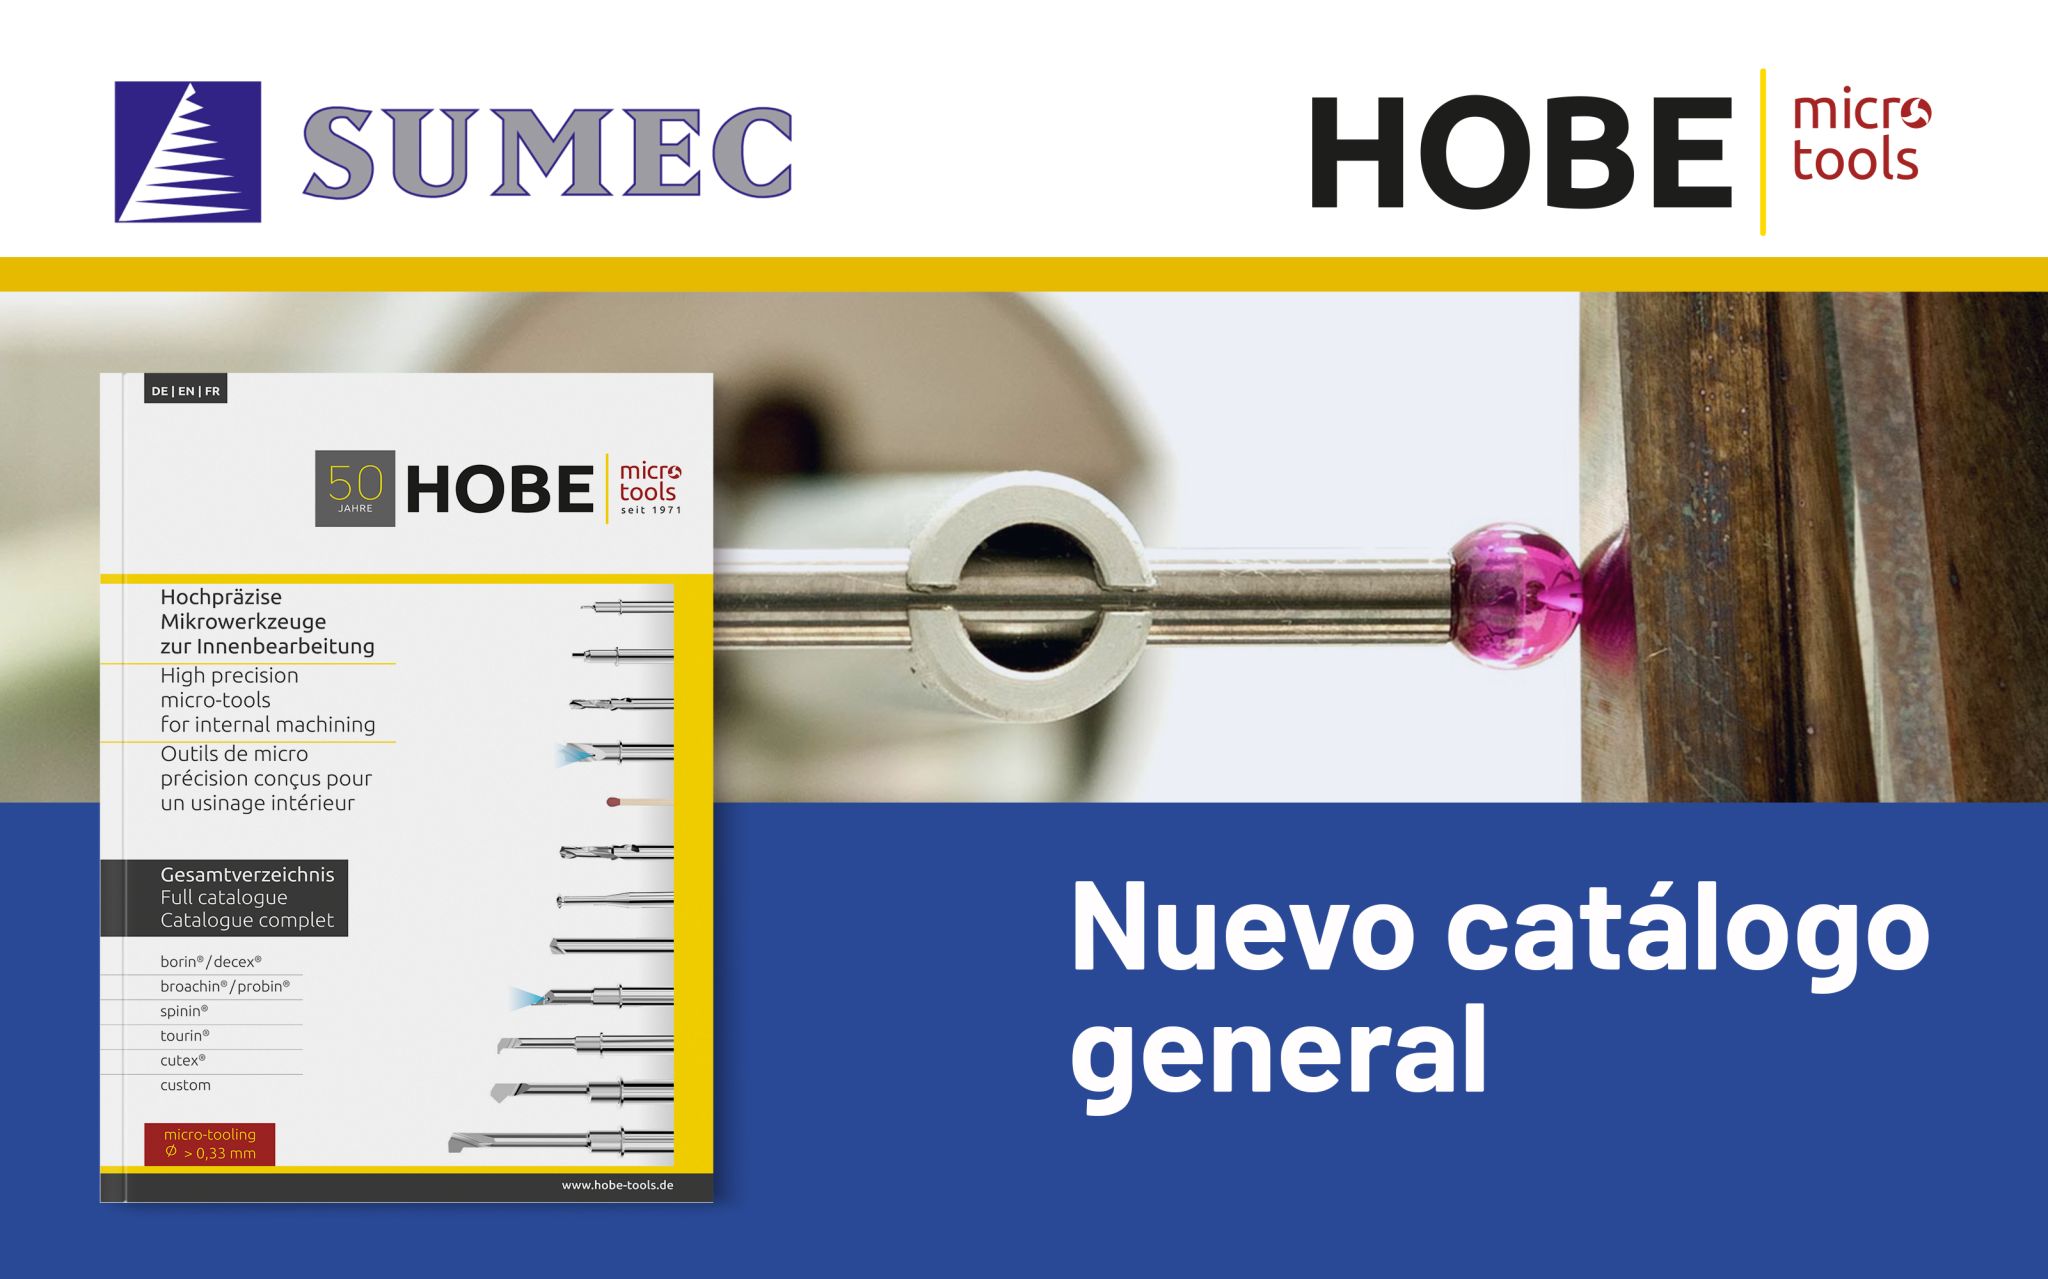 Hobe - Nuevo catálogo general